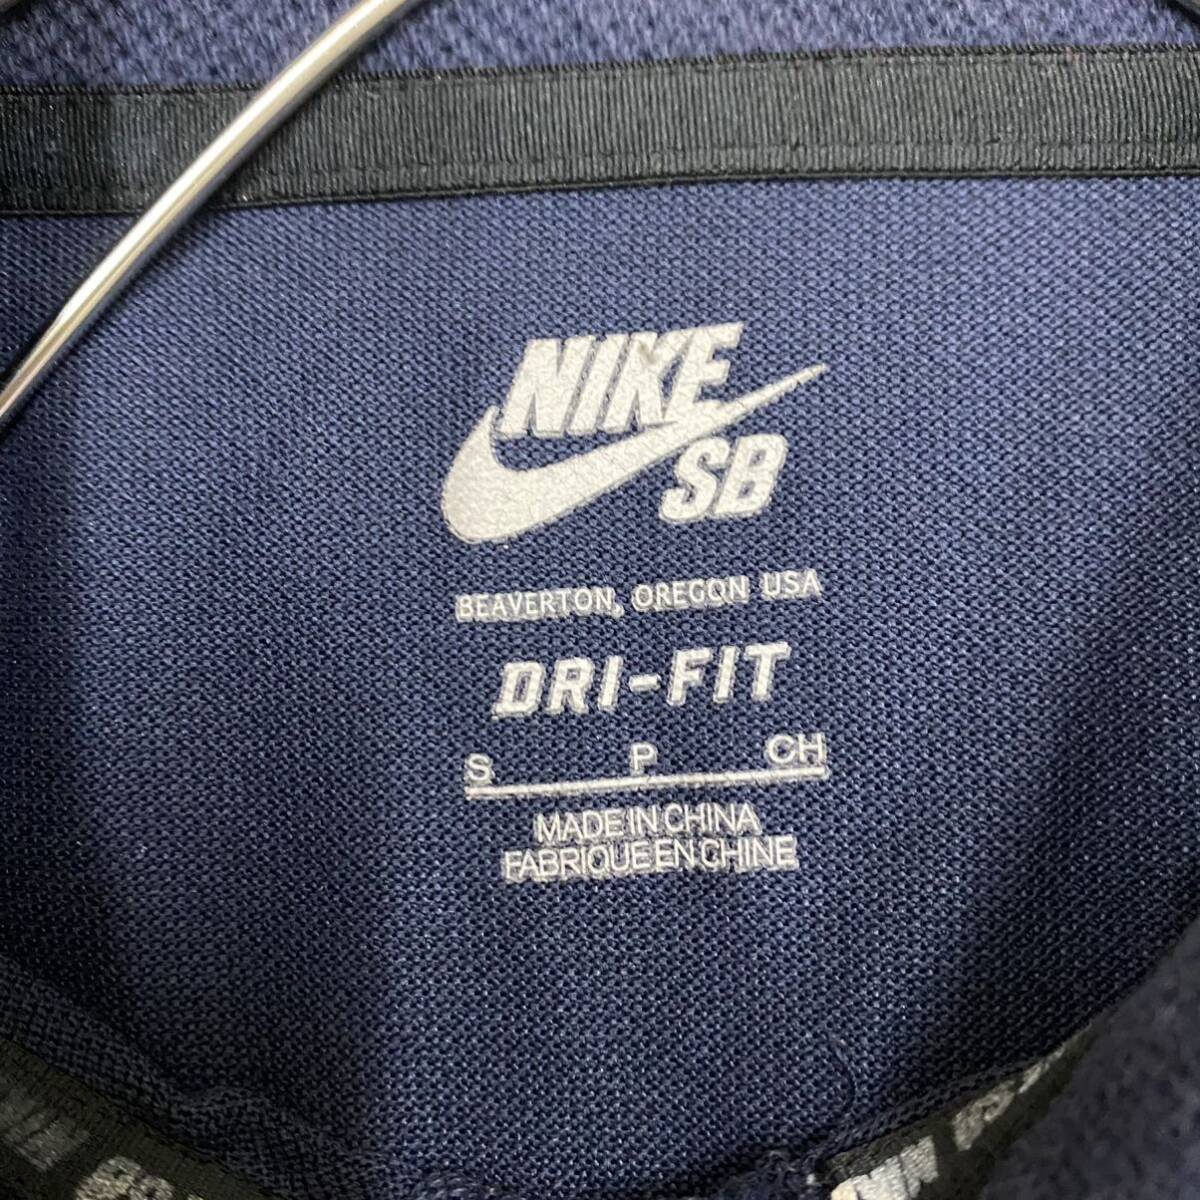 NIKE Nike рубашка с длинным рукавом рубашка-поло с длинным рукавом размер S темно-синий темно-синий цвет мужской tops нет максимальной ставки (M17)